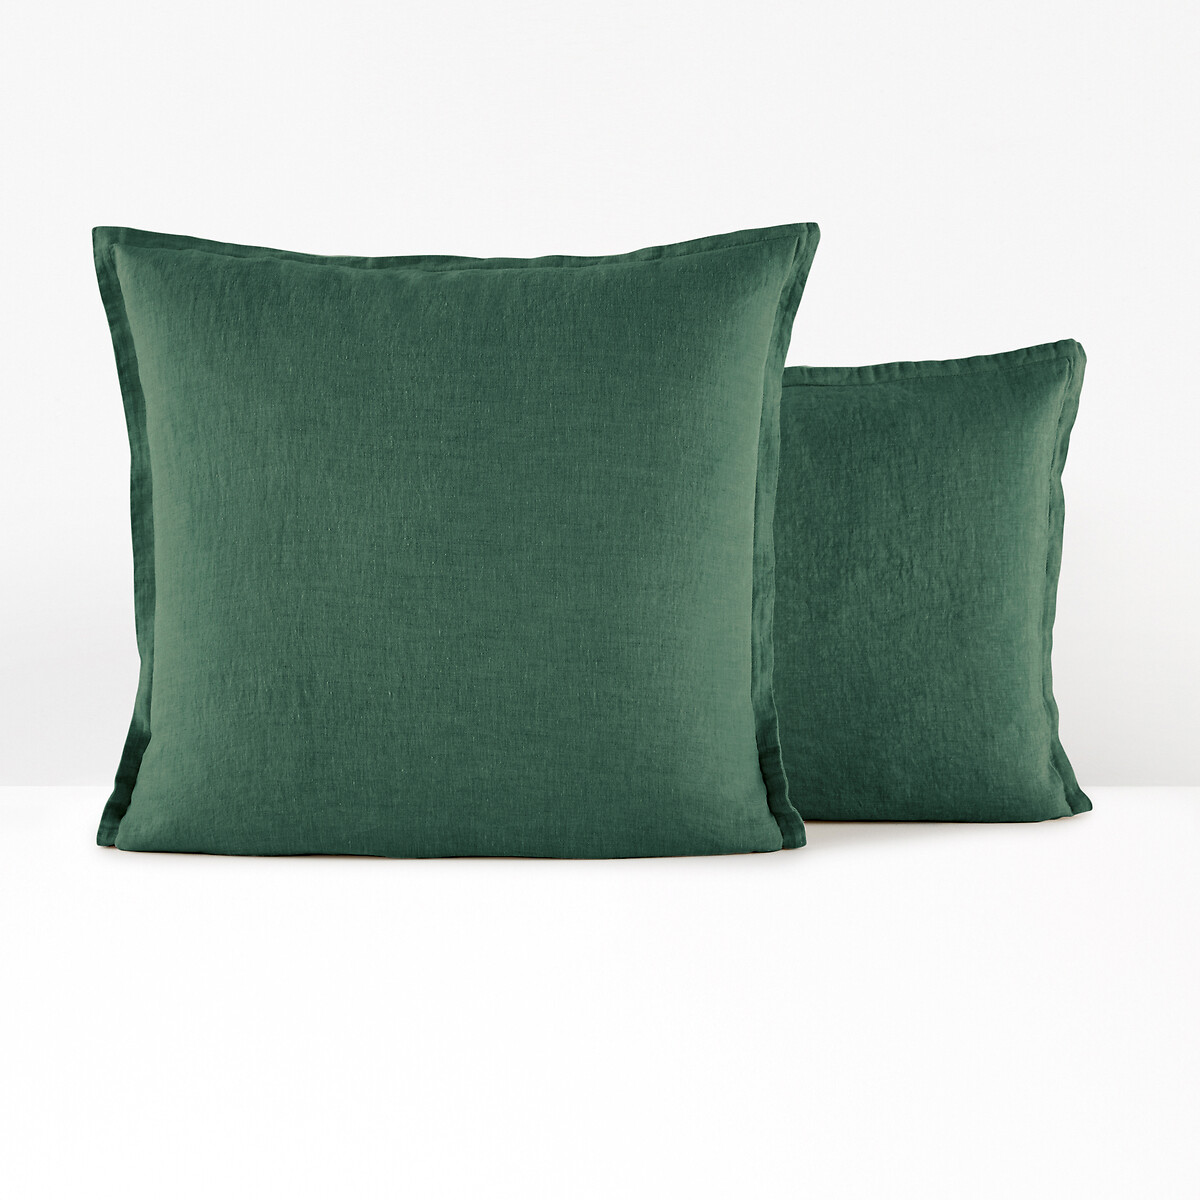 Наволочка Однотонная на подушку или валик из стираного льна 50 x 70 см зеленый